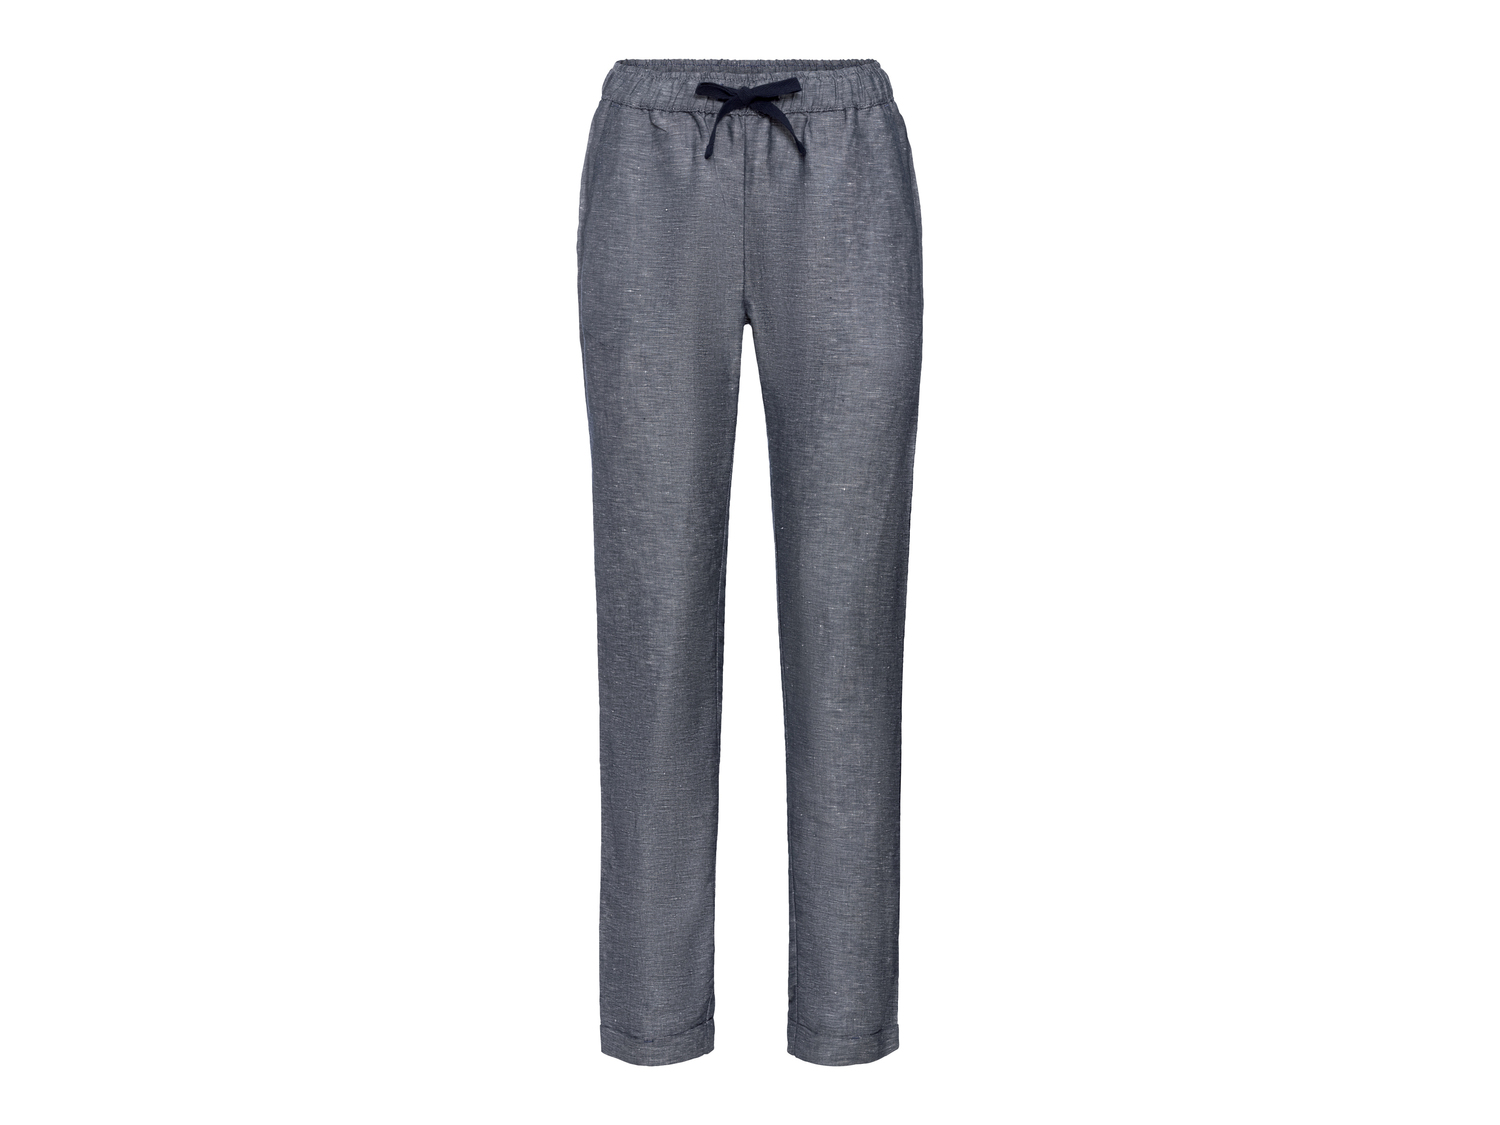 Pantaloni da donna Esmara, prezzo 8.99 &#8364; 
Misure: 38-48
Taglie disponibili

Caratteristiche

- ...